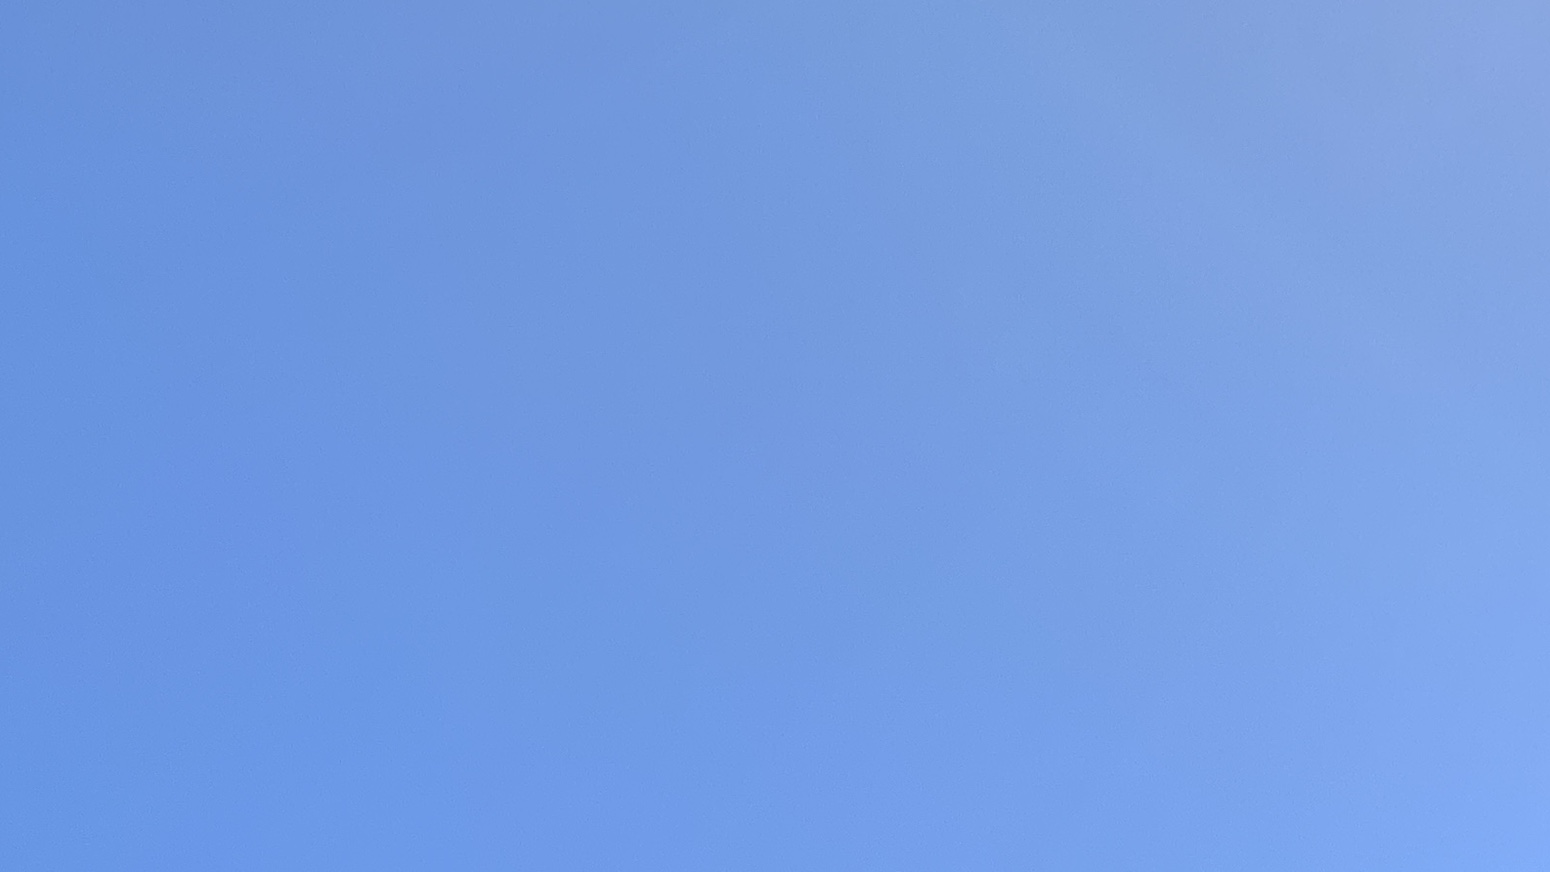 A light blue sky with no clouds